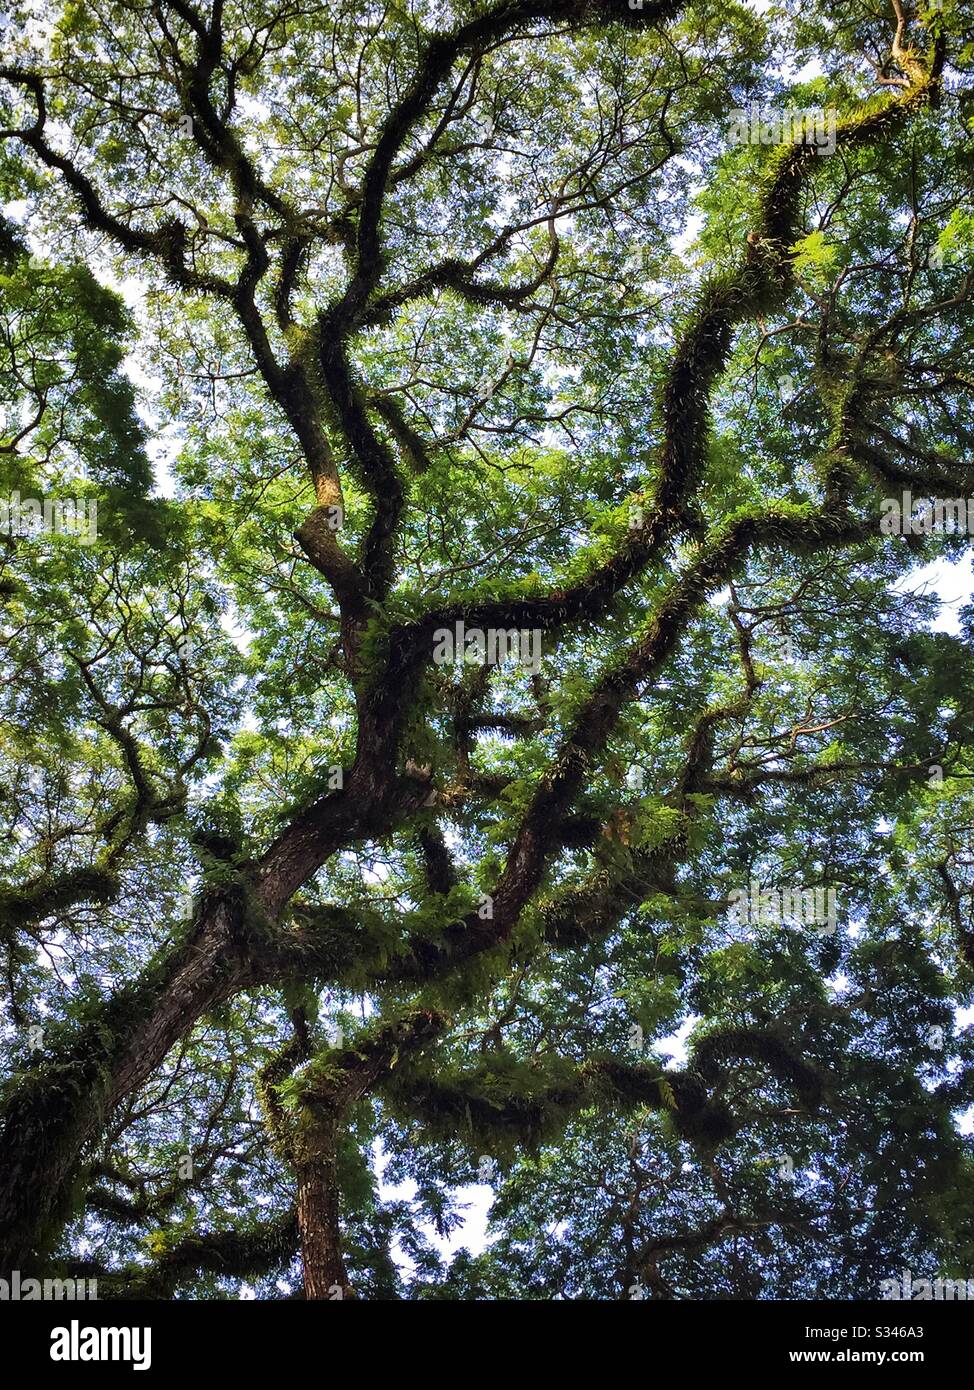 Les vieux arbres de pluie géants, ou saman, couverts de fougères épiphytes, se présentent au Rasa Sayang Resort & Spa, Batu Ferringhi, Penang, Malaisie Banque D'Images